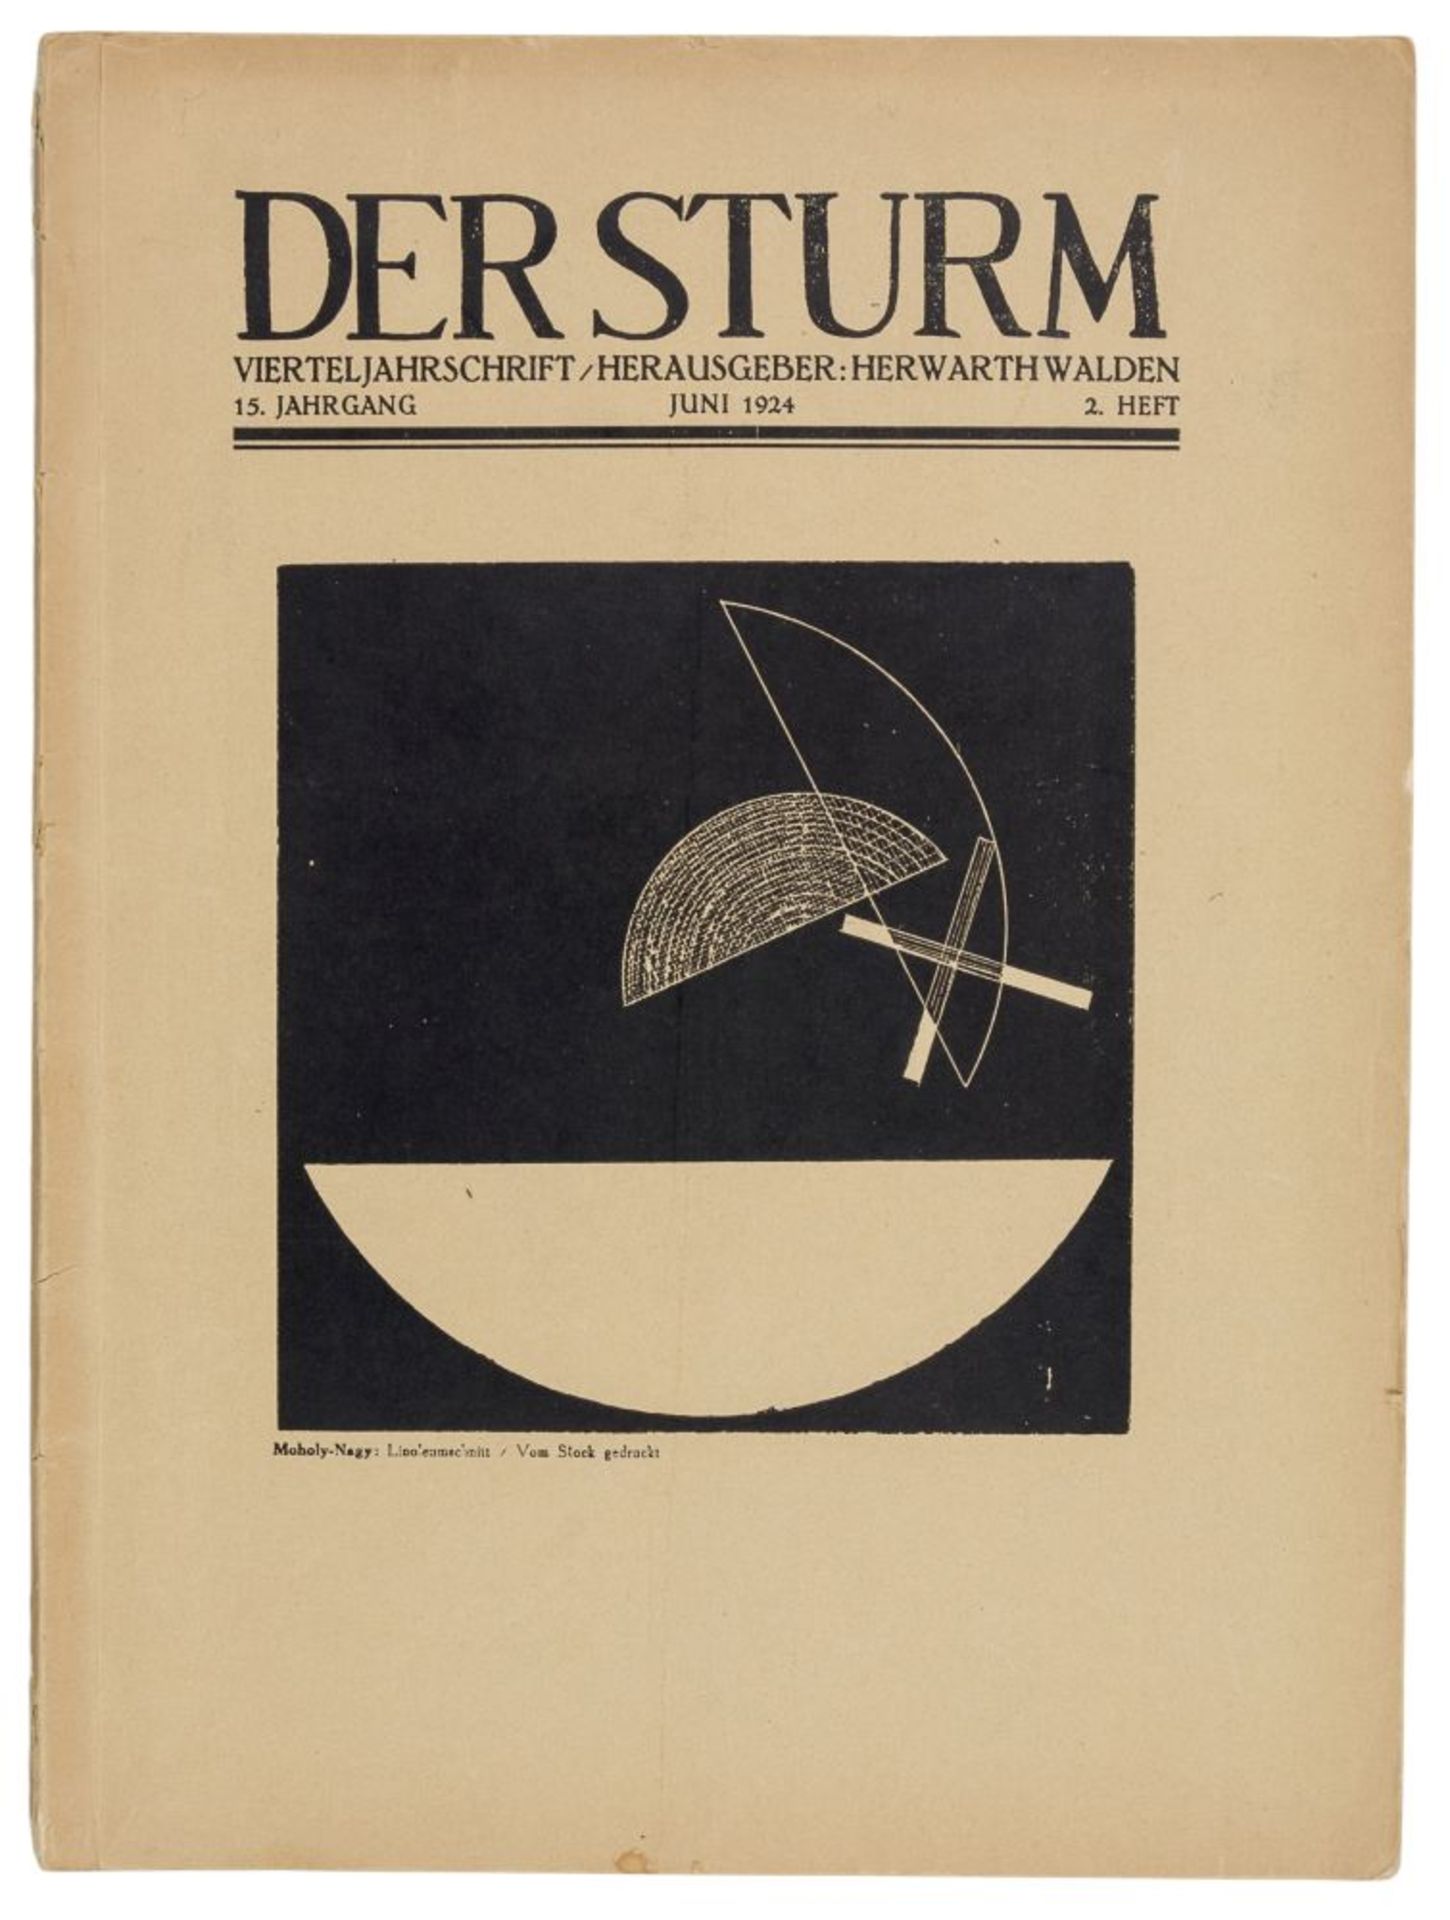 Expressionismus - - Der Sturm. Vierteljahrschrift. Herausgeber: Herwarth Walden. 15. Jahrgang,